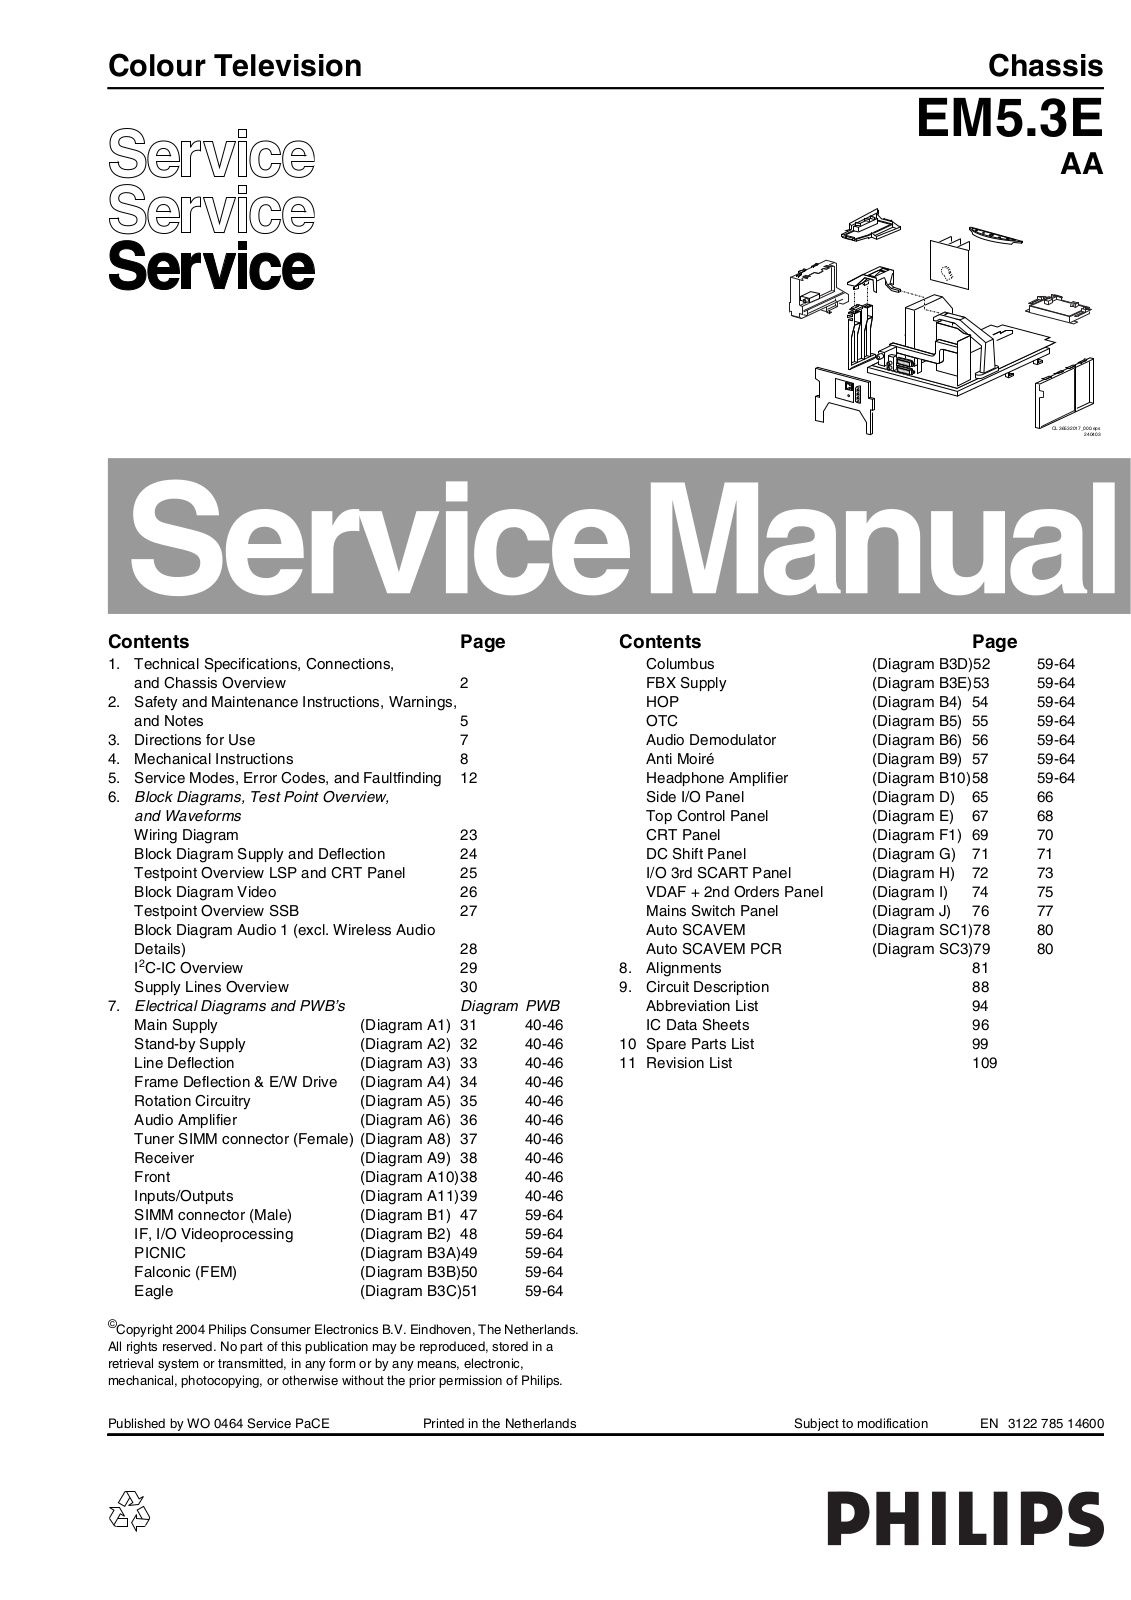 Philips EM5.3E AA Service Manual